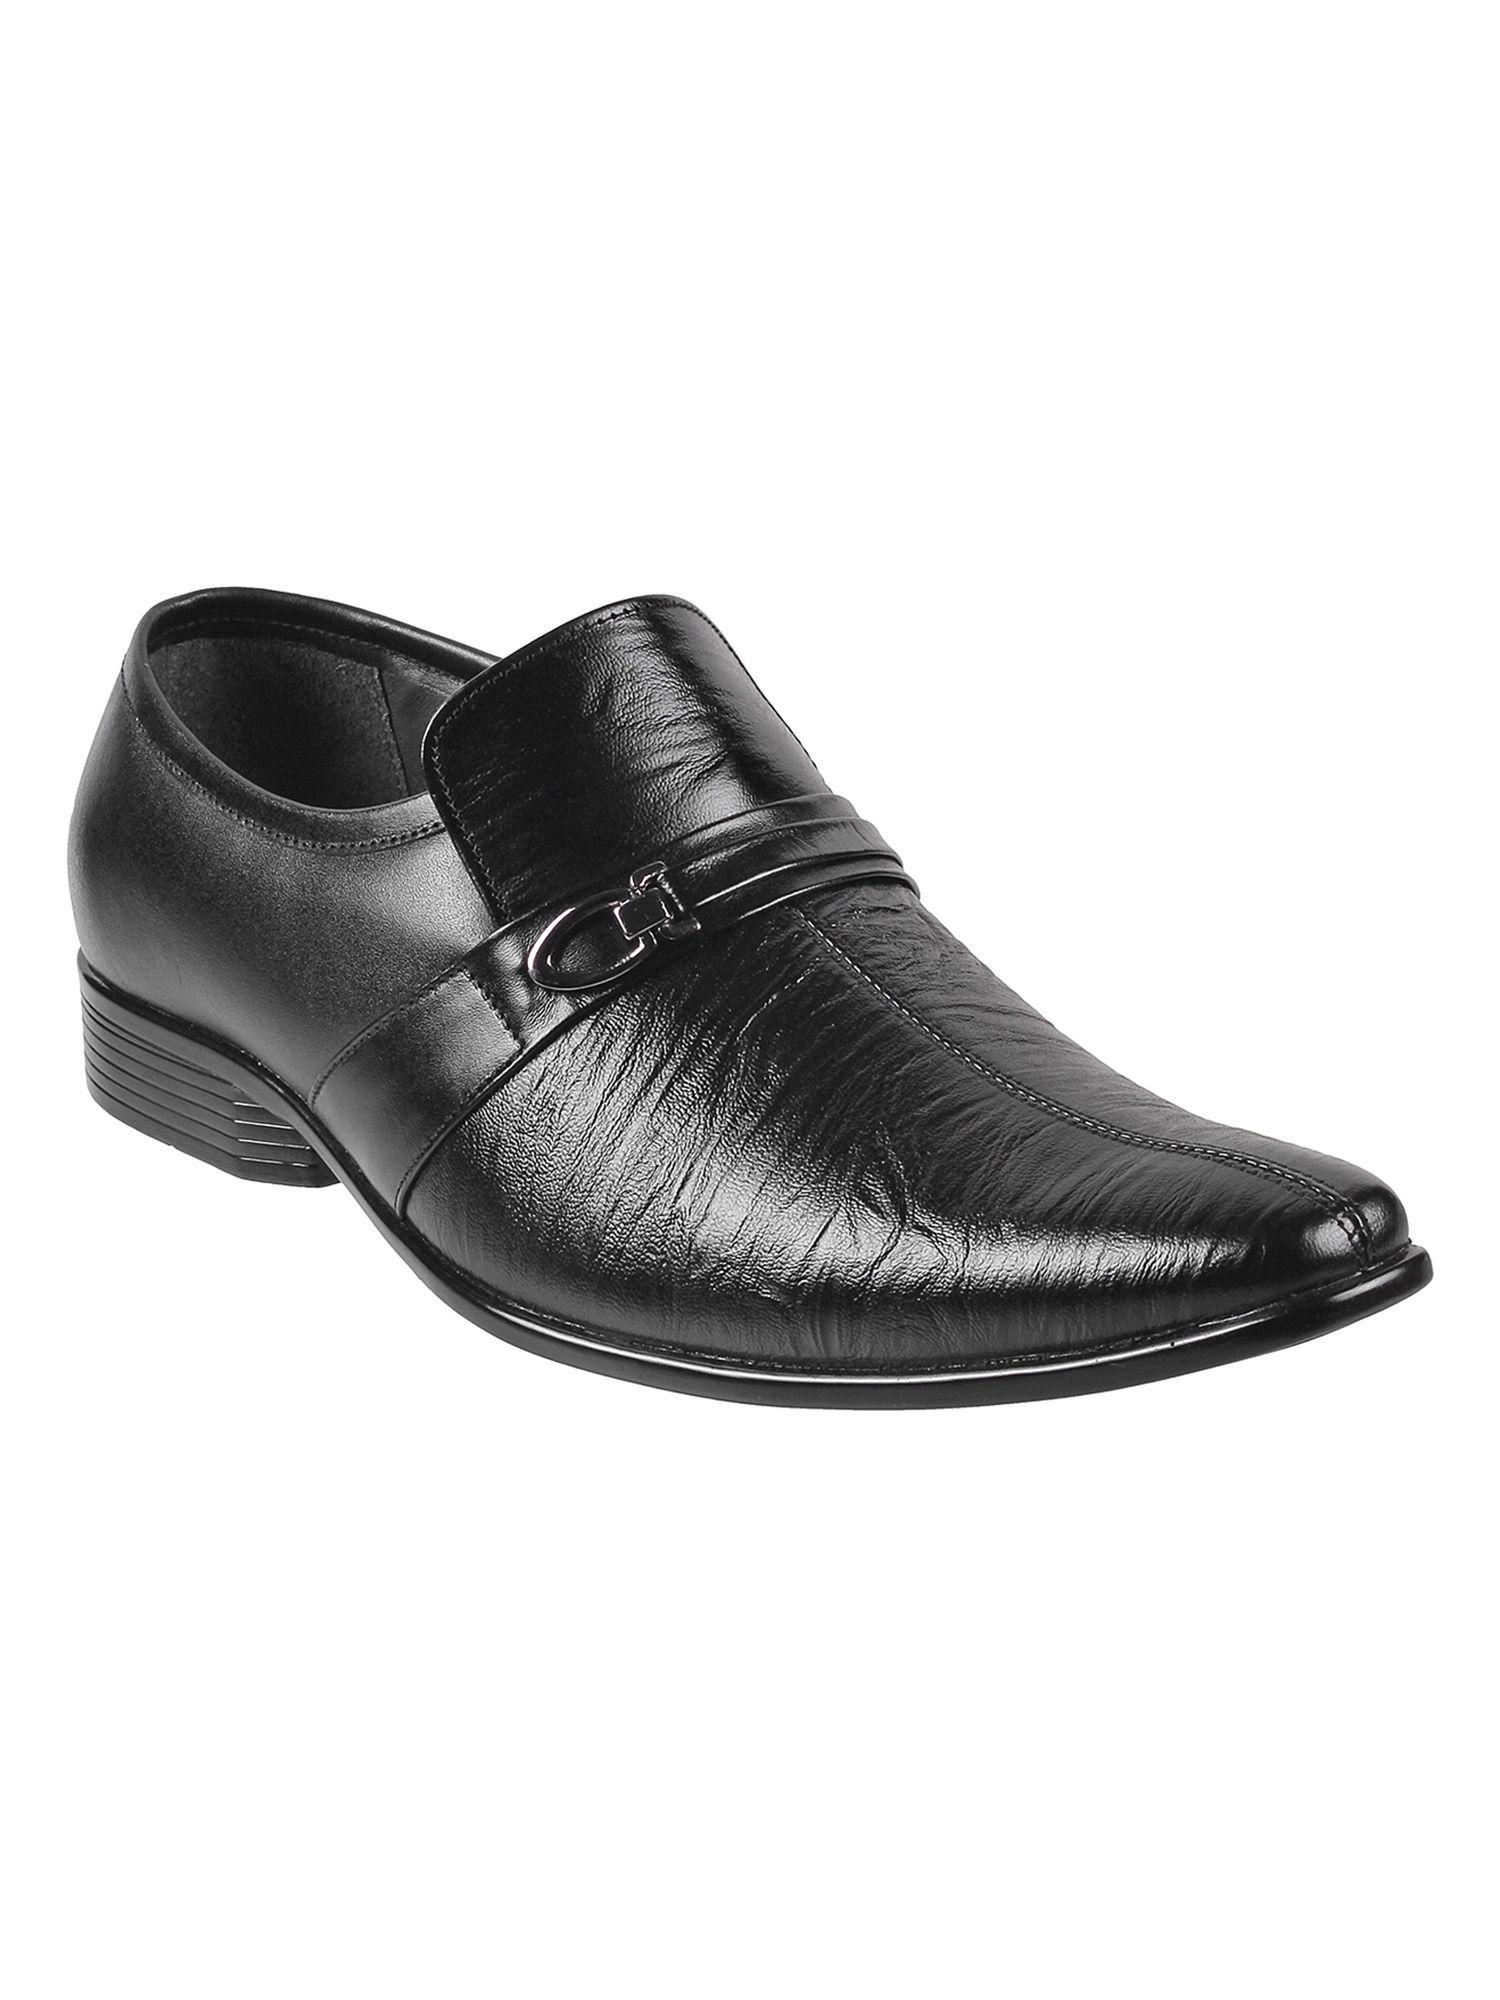 metro men's black formal shoes